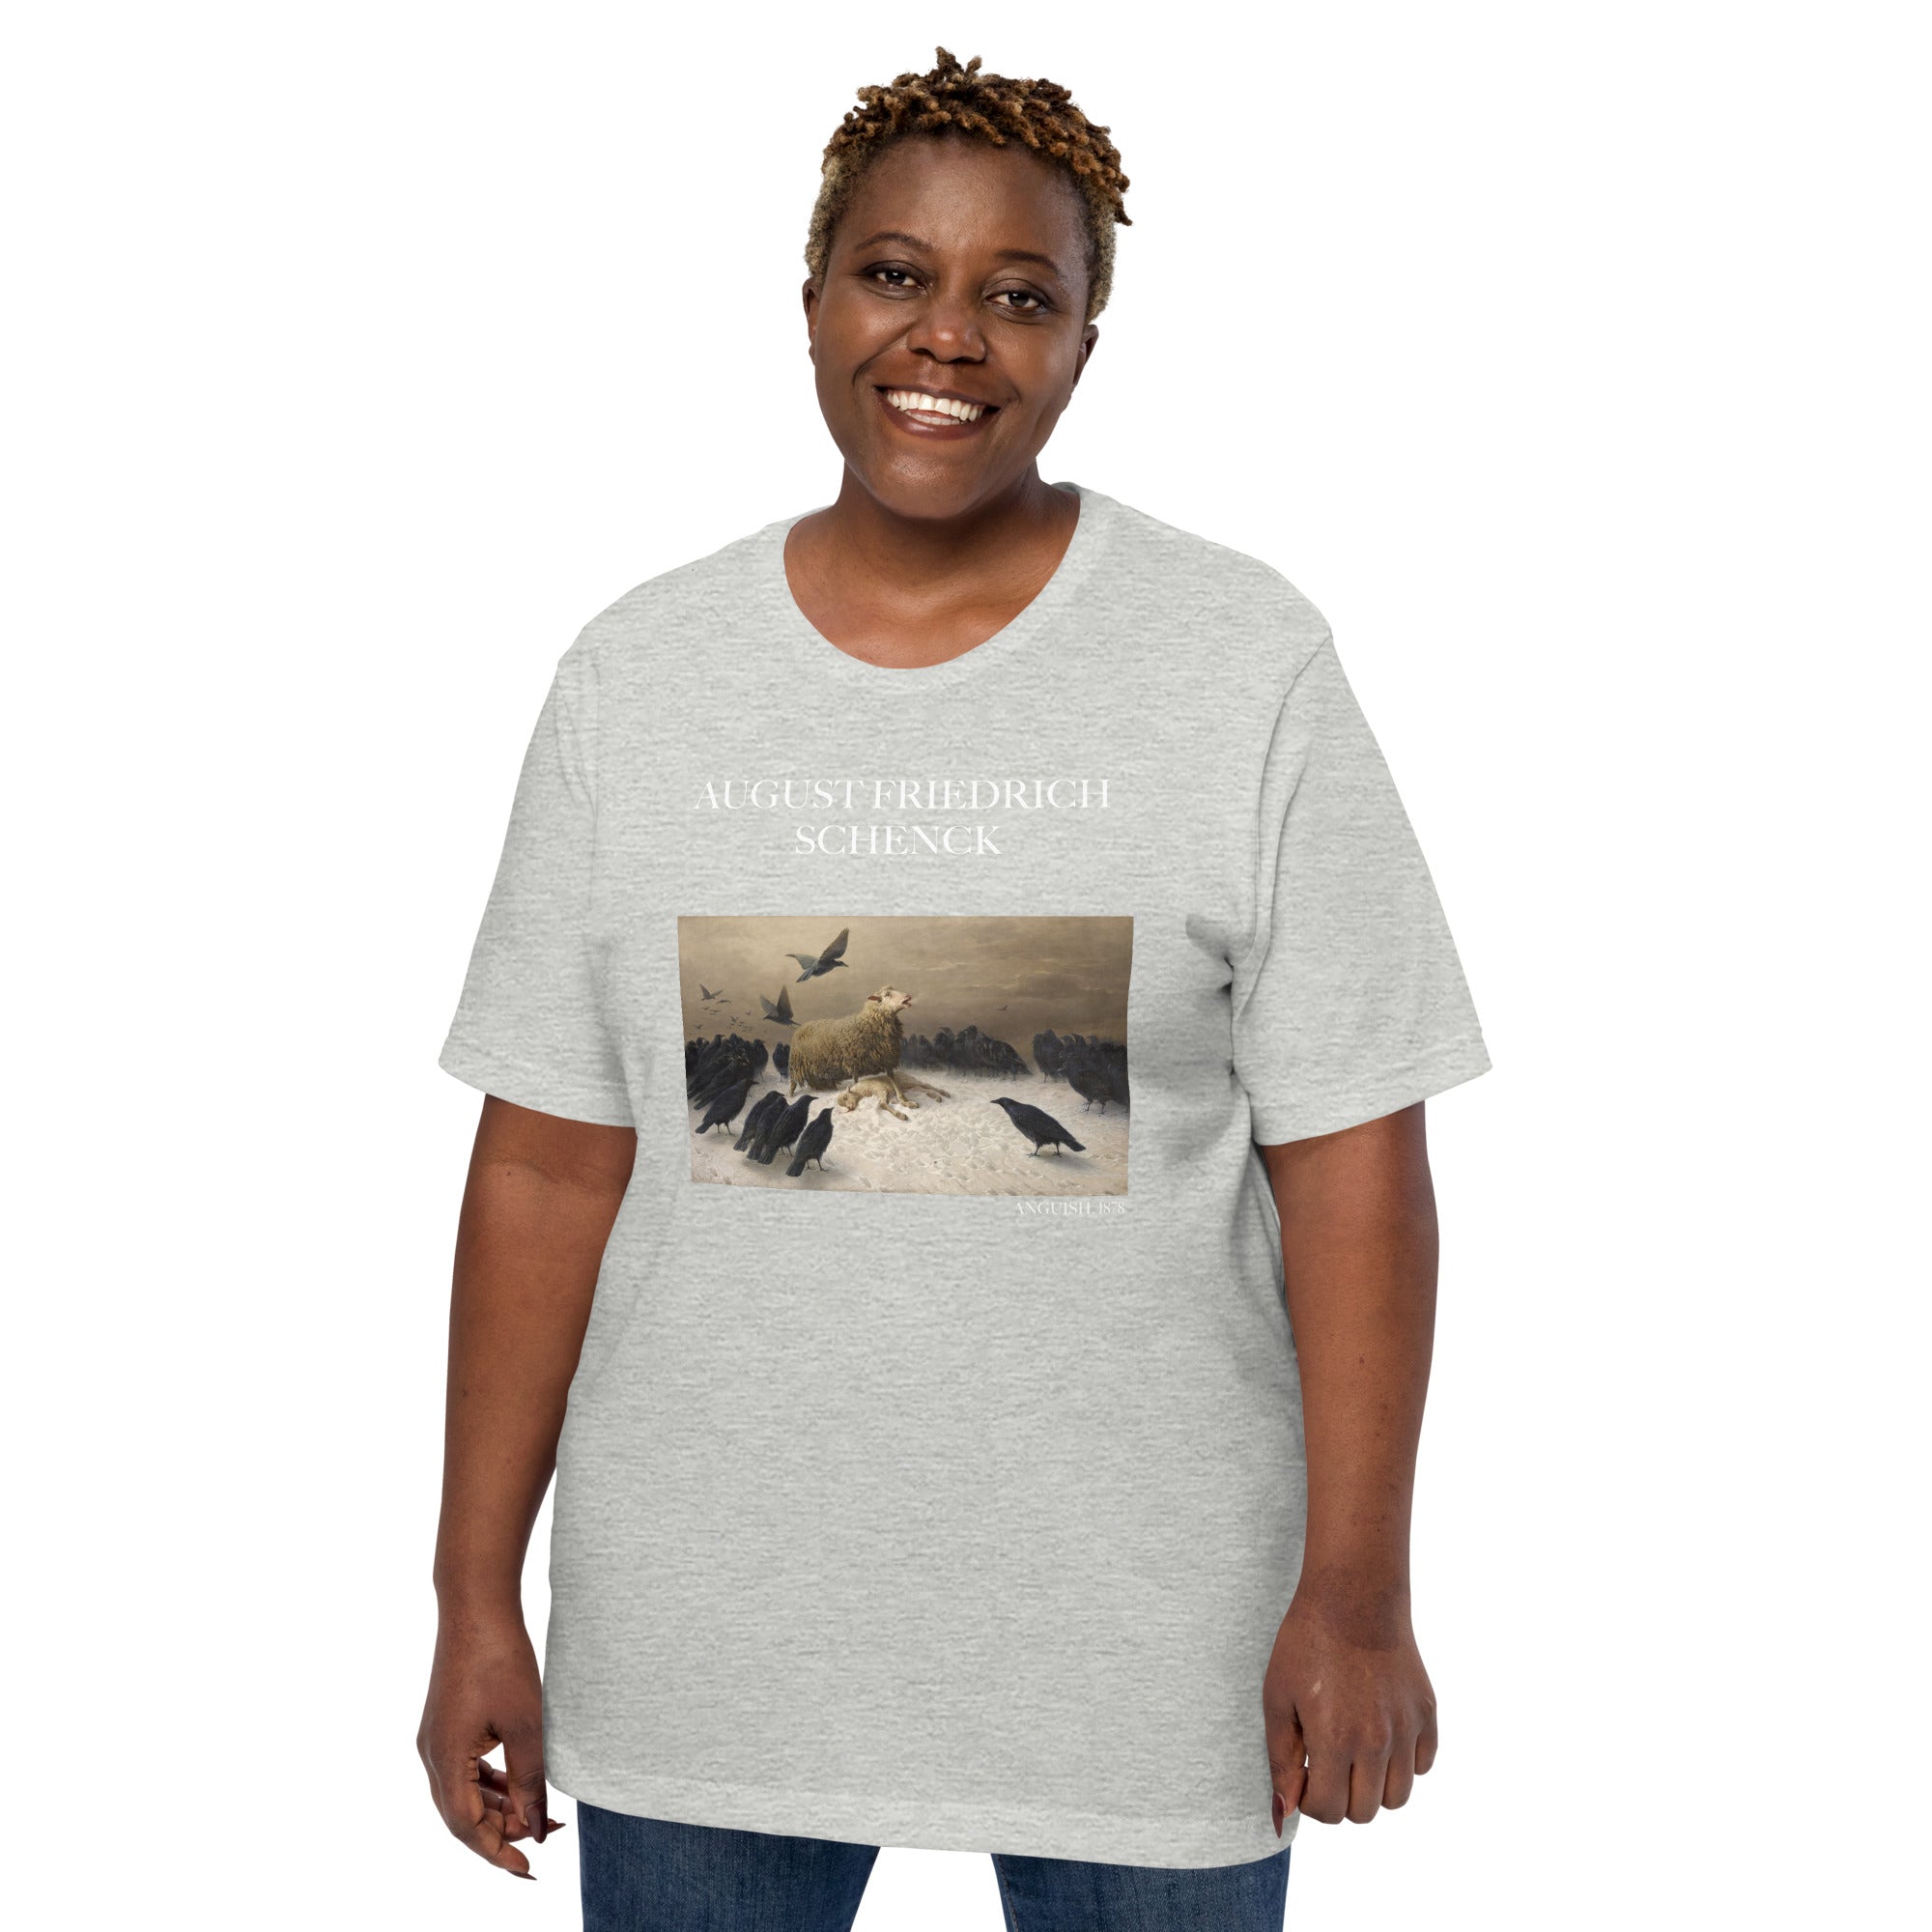 August Friedrich Schenck 'Anguish' Berühmtes Gemälde T-Shirt | Unisex Klassisches Kunst-T-Shirt